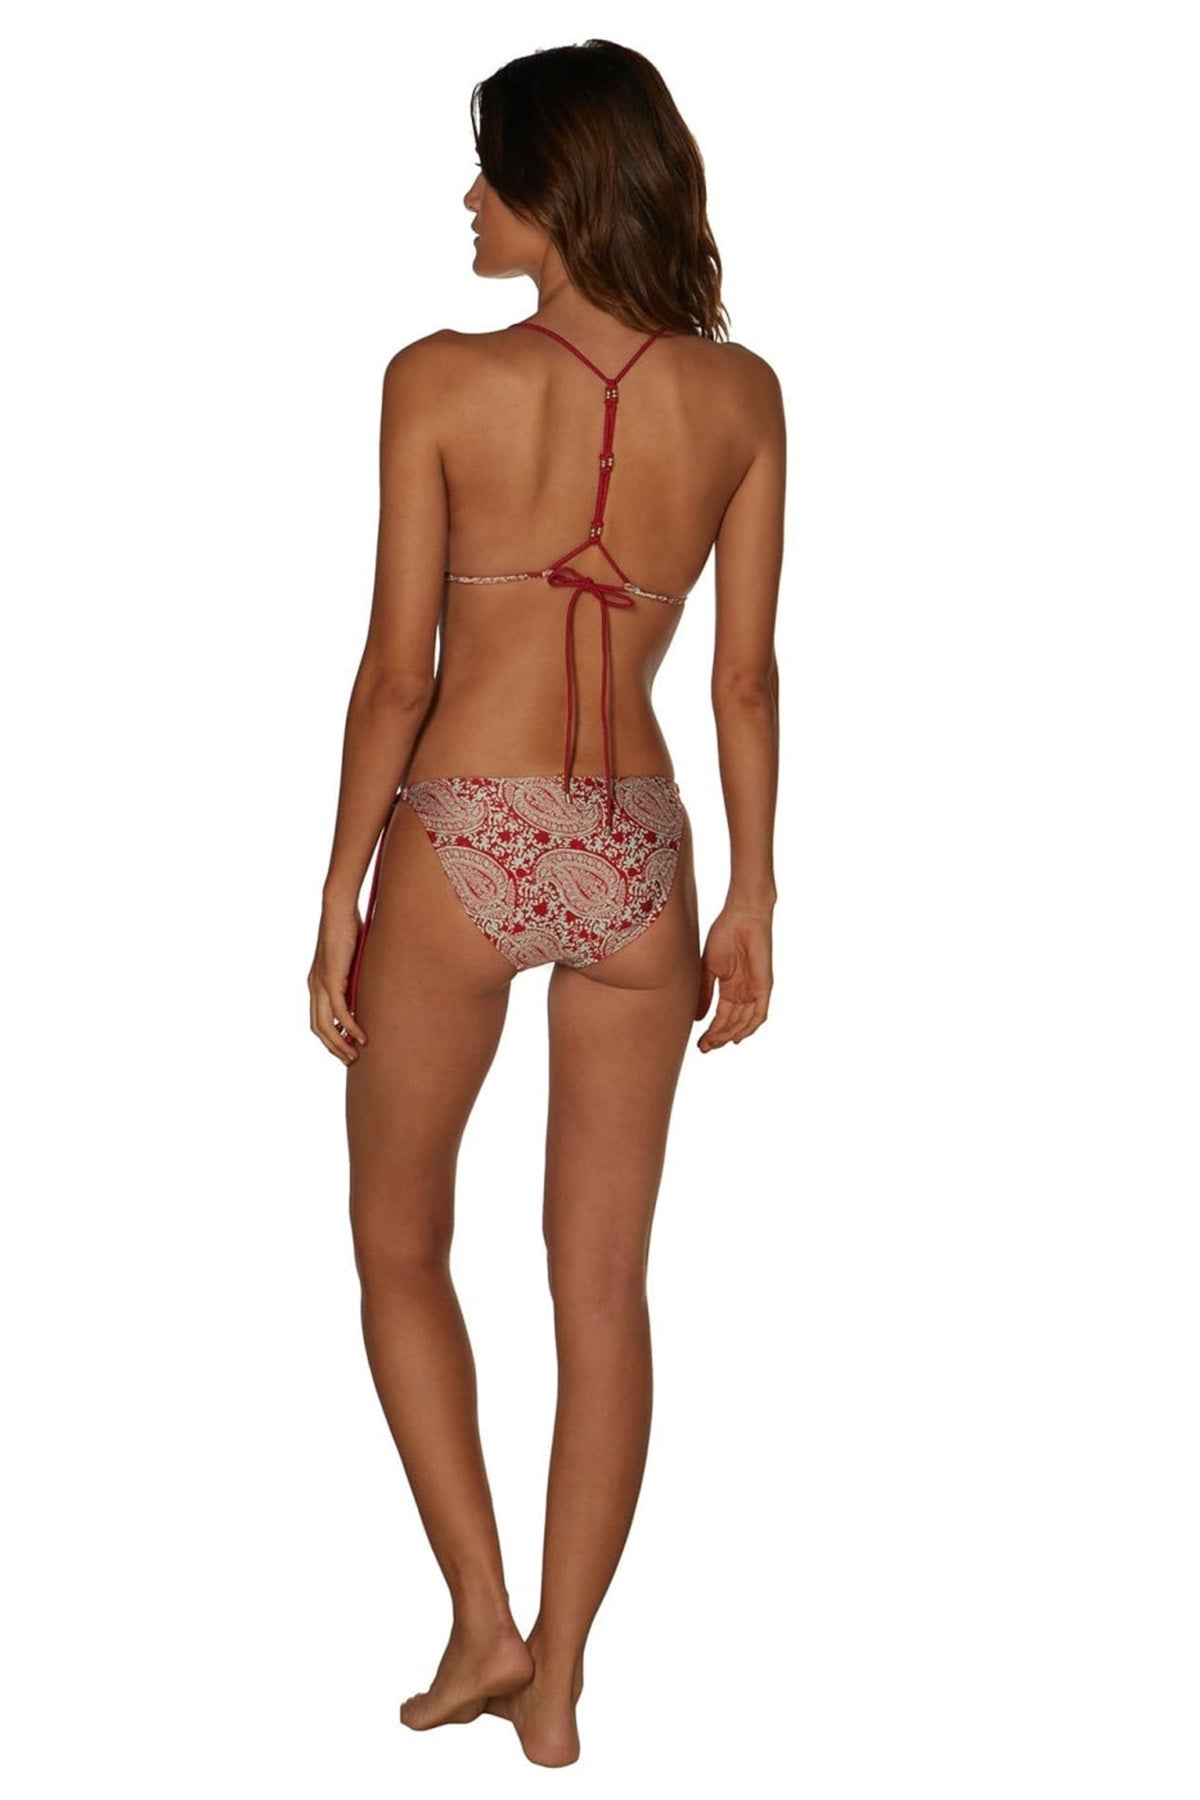 Vix Pyra Red Asha Bikini-Libas Trendy Fashion Store